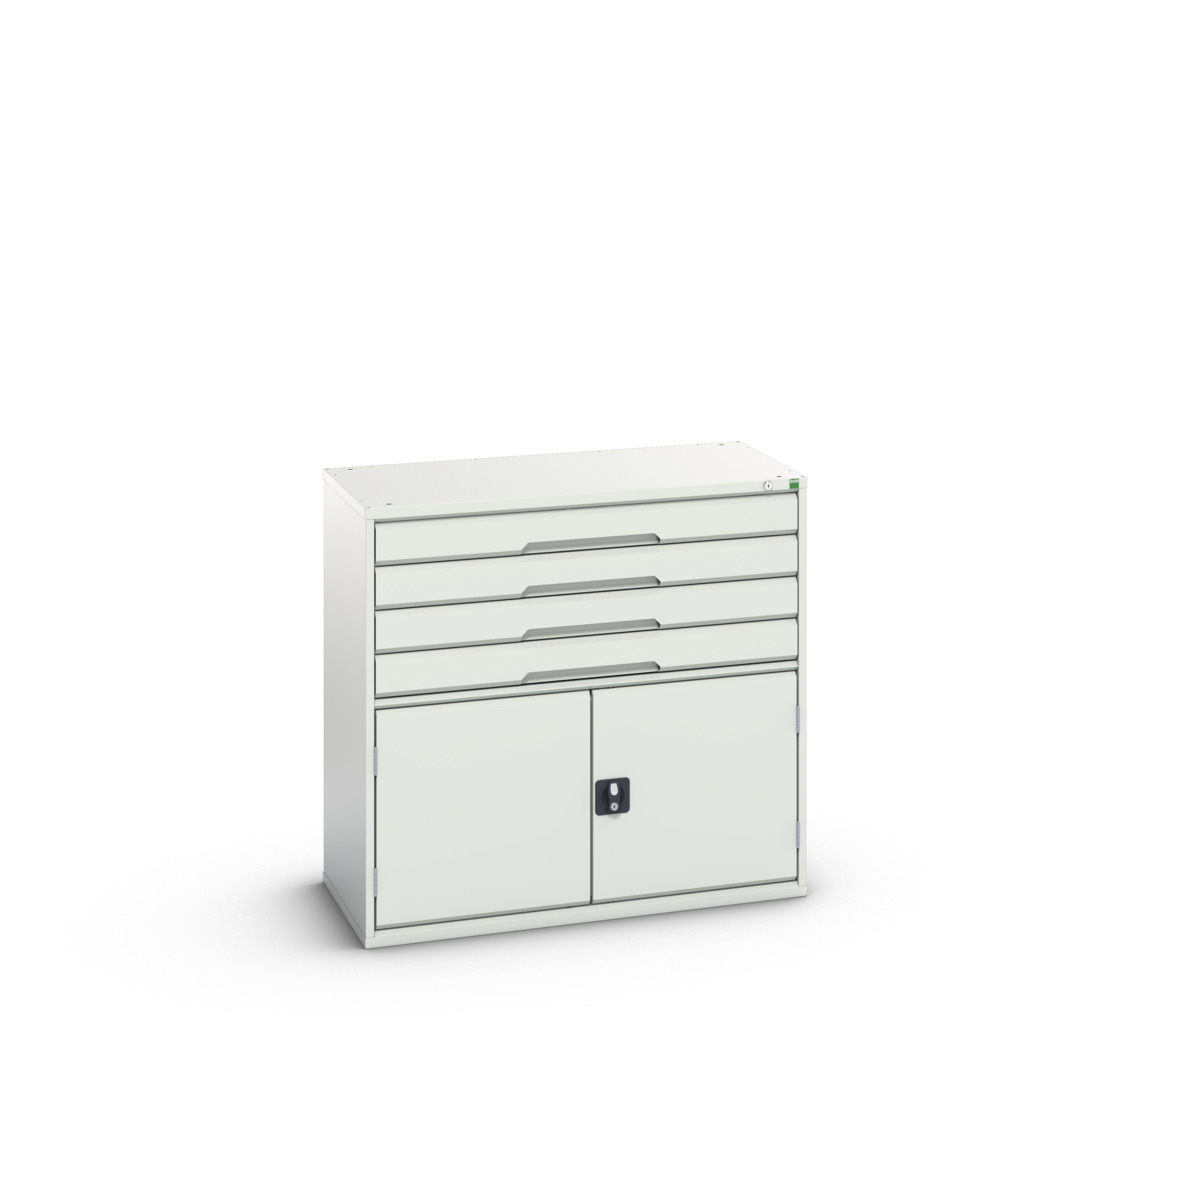 16925265.16 - verso drawer-door cabinet